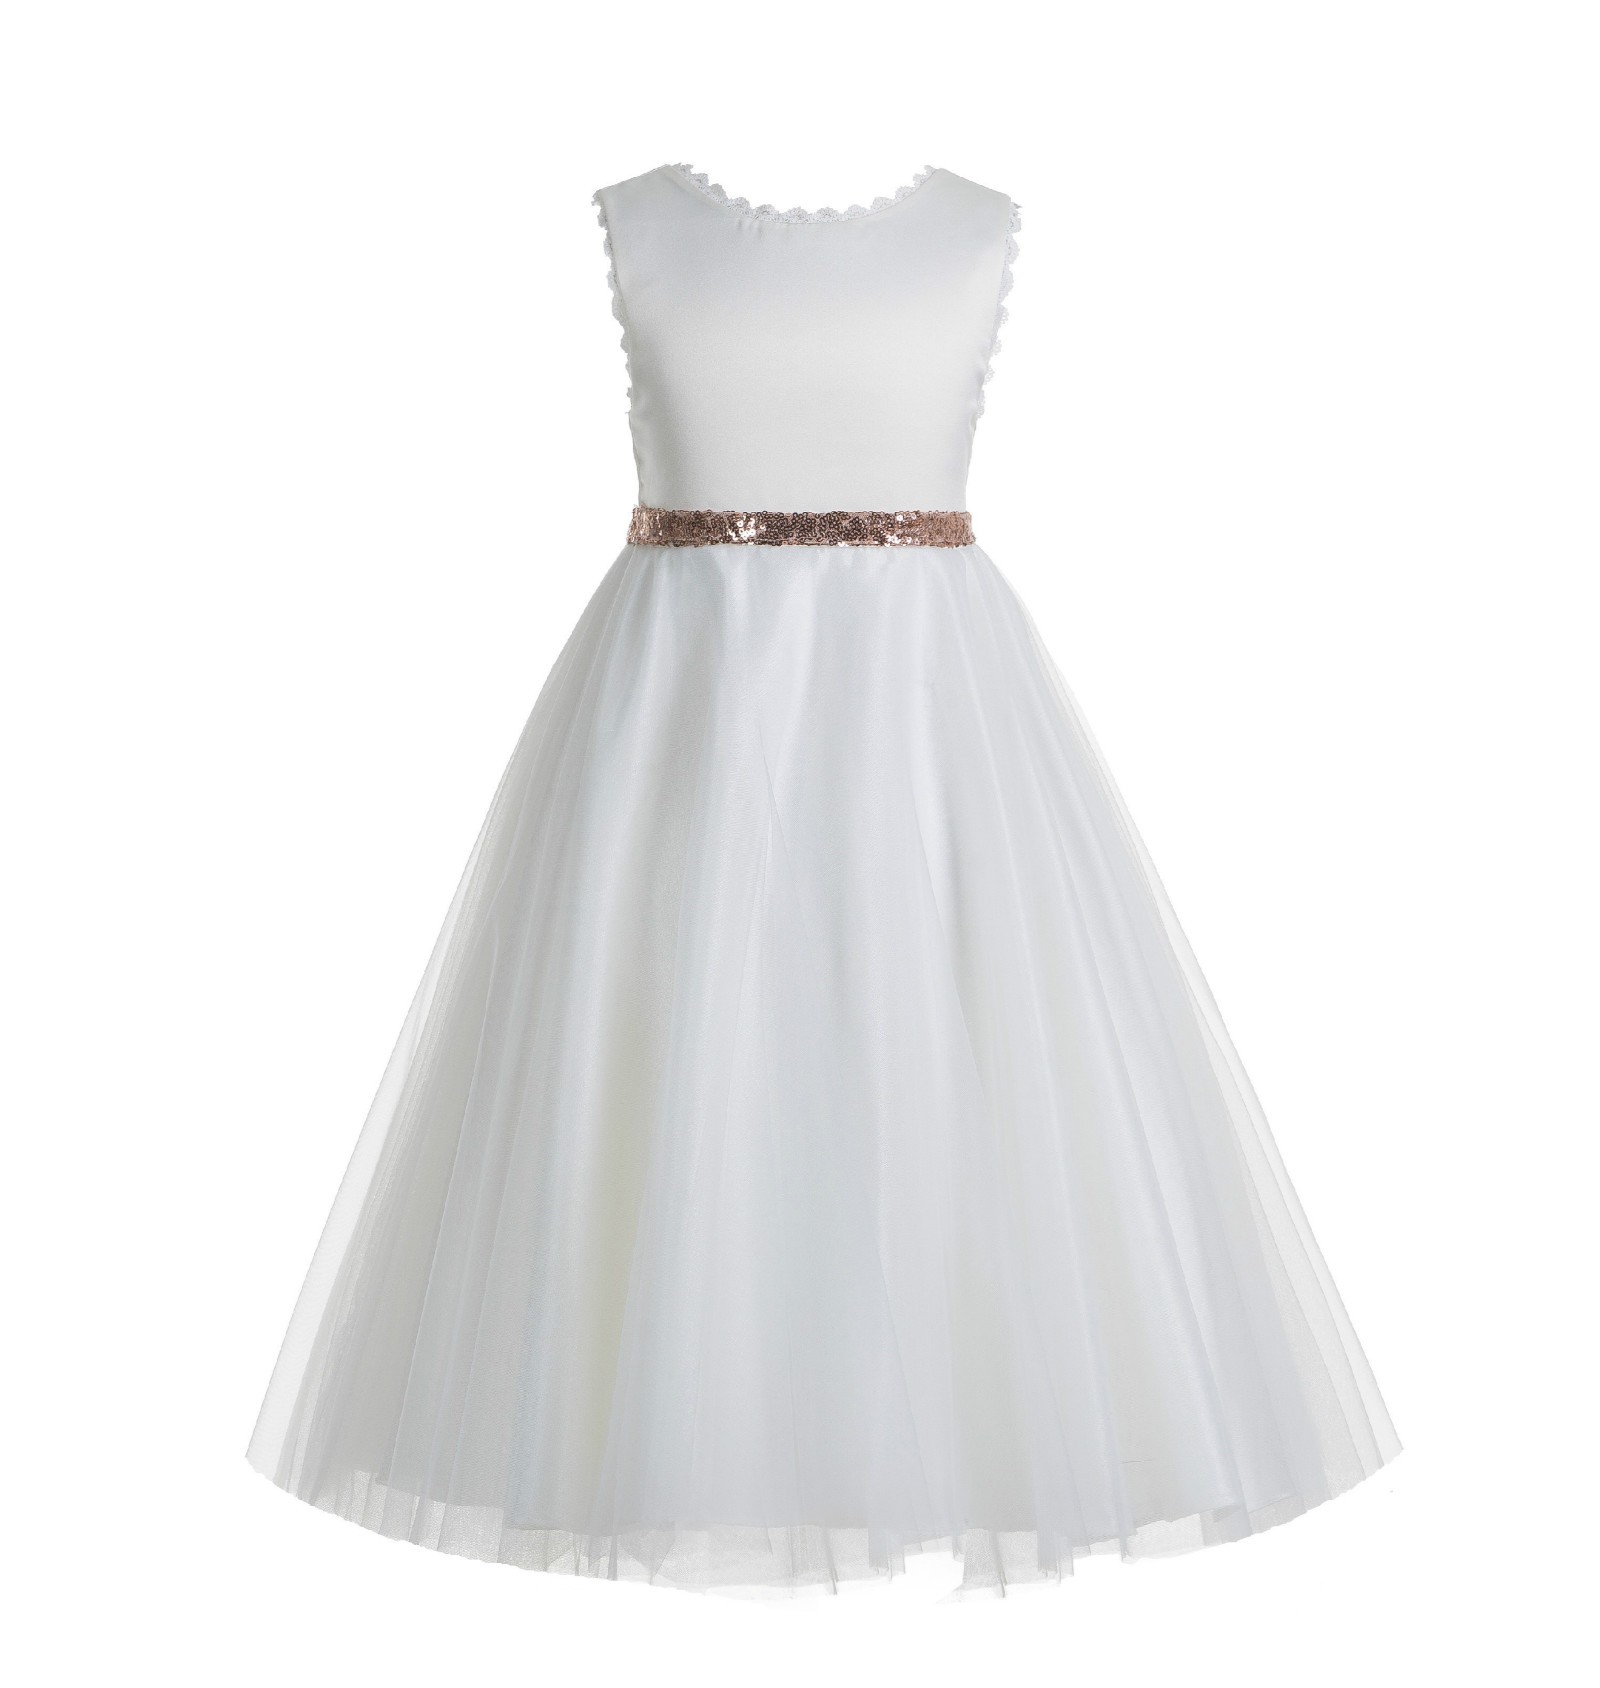 White / Rose Gold V-Back Lace Edge Flower Girl Dress 183